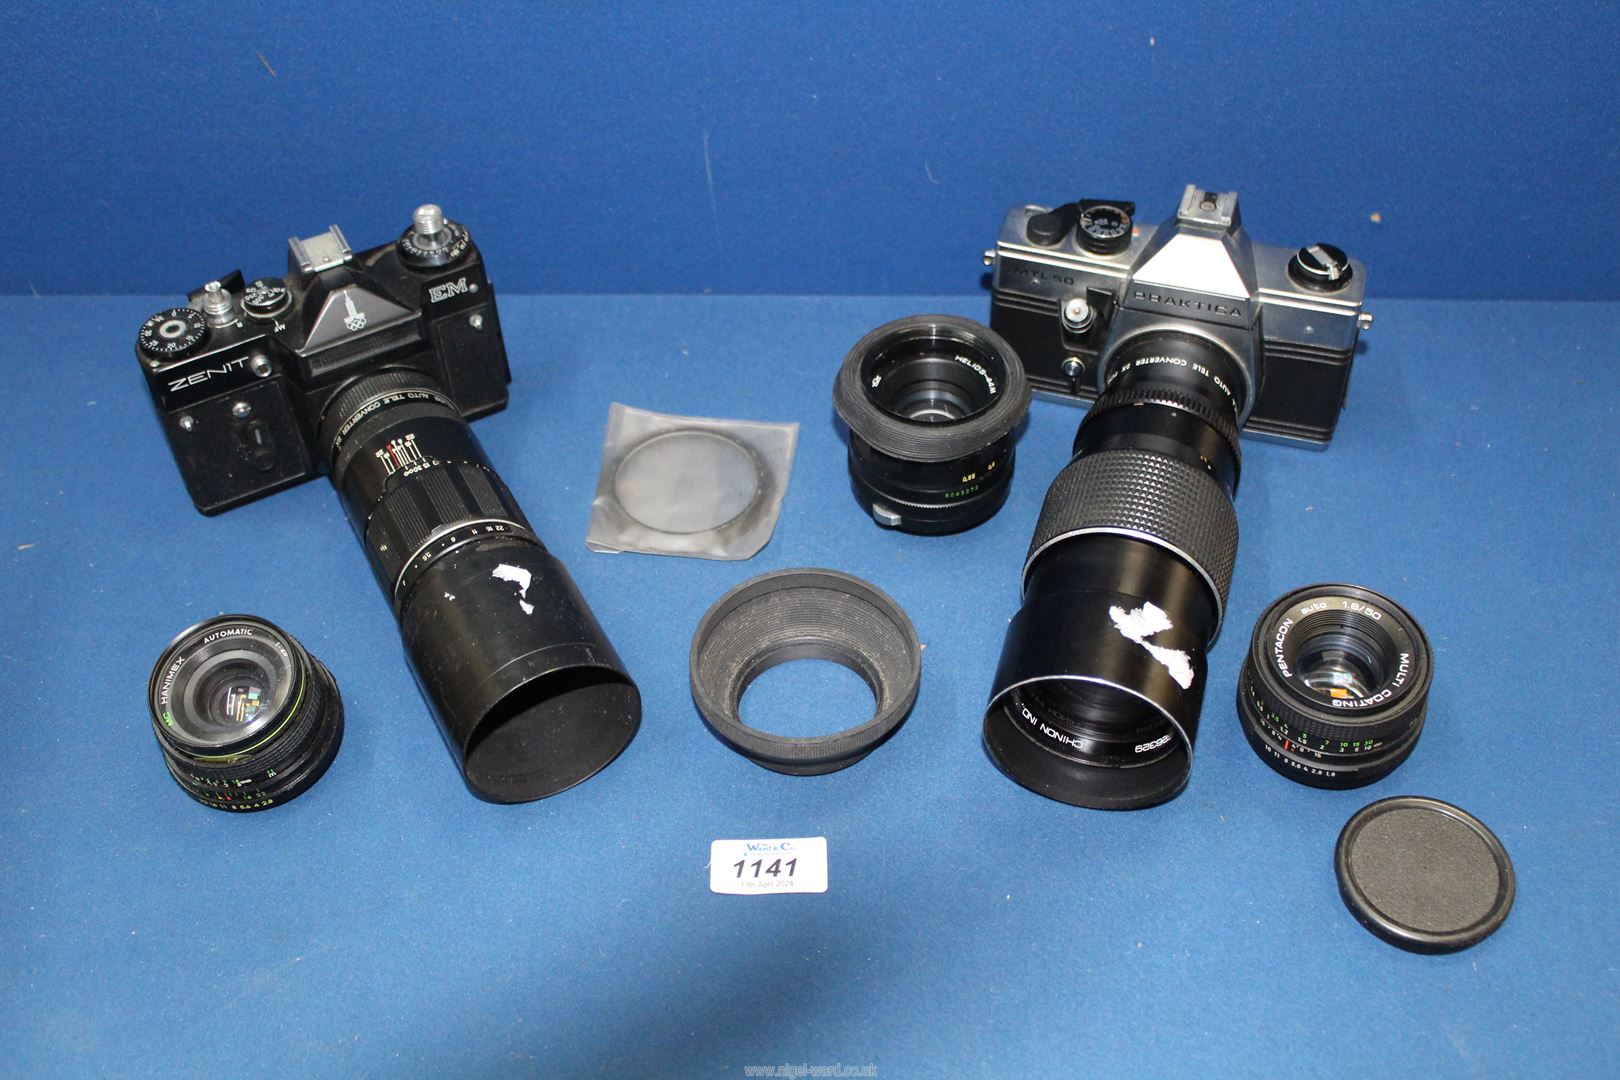 Two cameras including Zenit EM with Helios Auto tele Converter and Praktica MTL50 camera plus